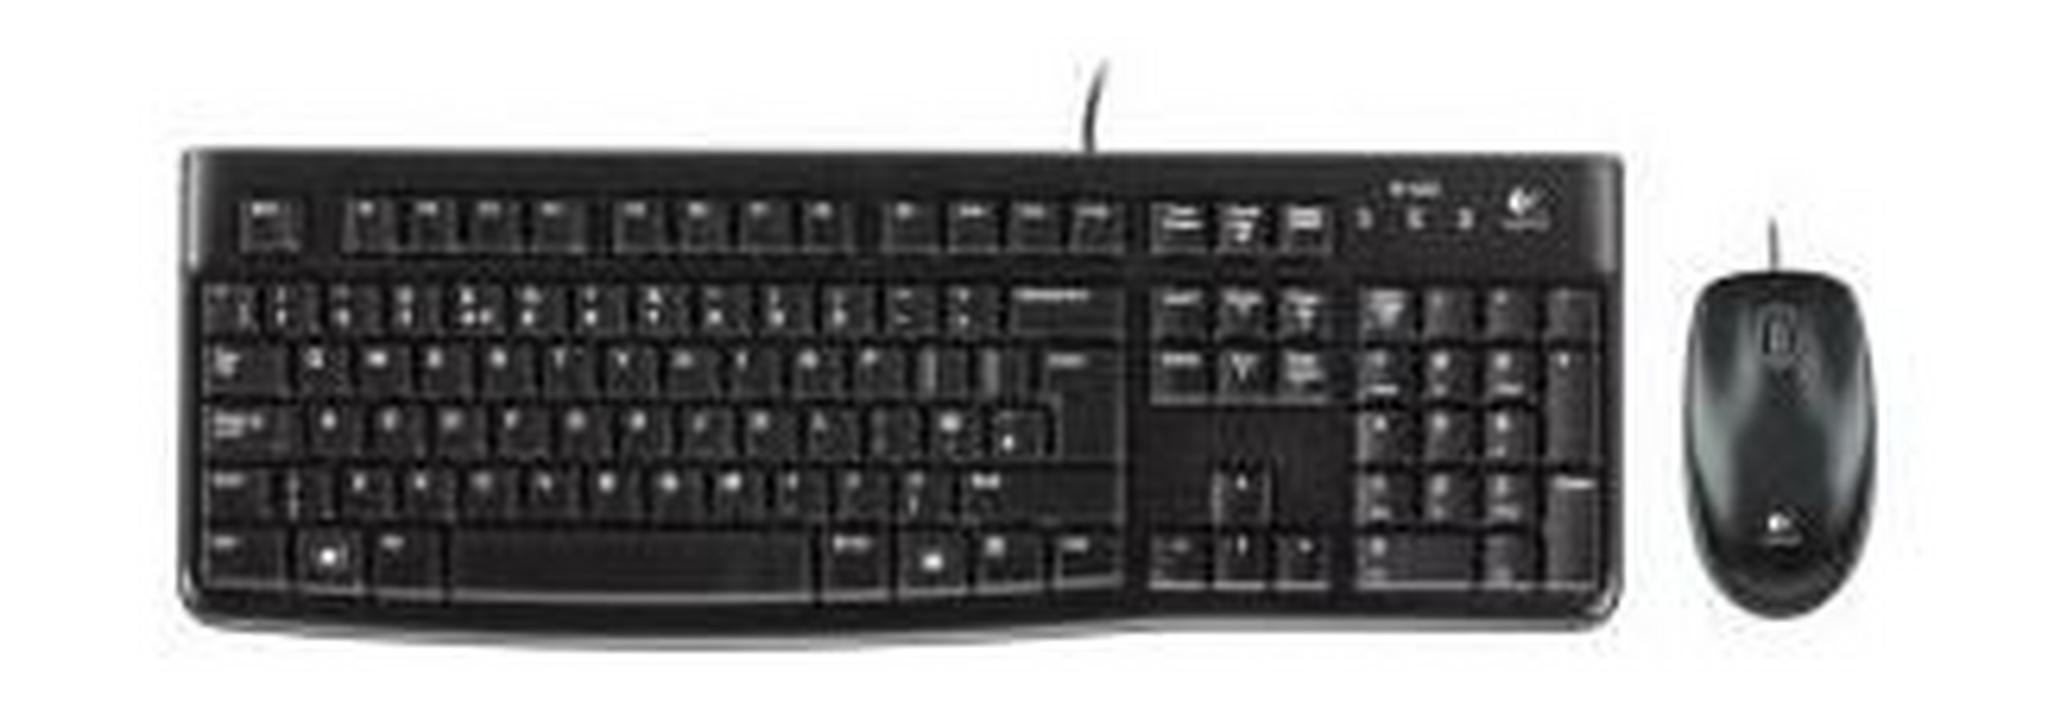 لوحة المفاتيح والمااوس من لوجيتك - إنجيليزي/عربي MK120 (920-002546)